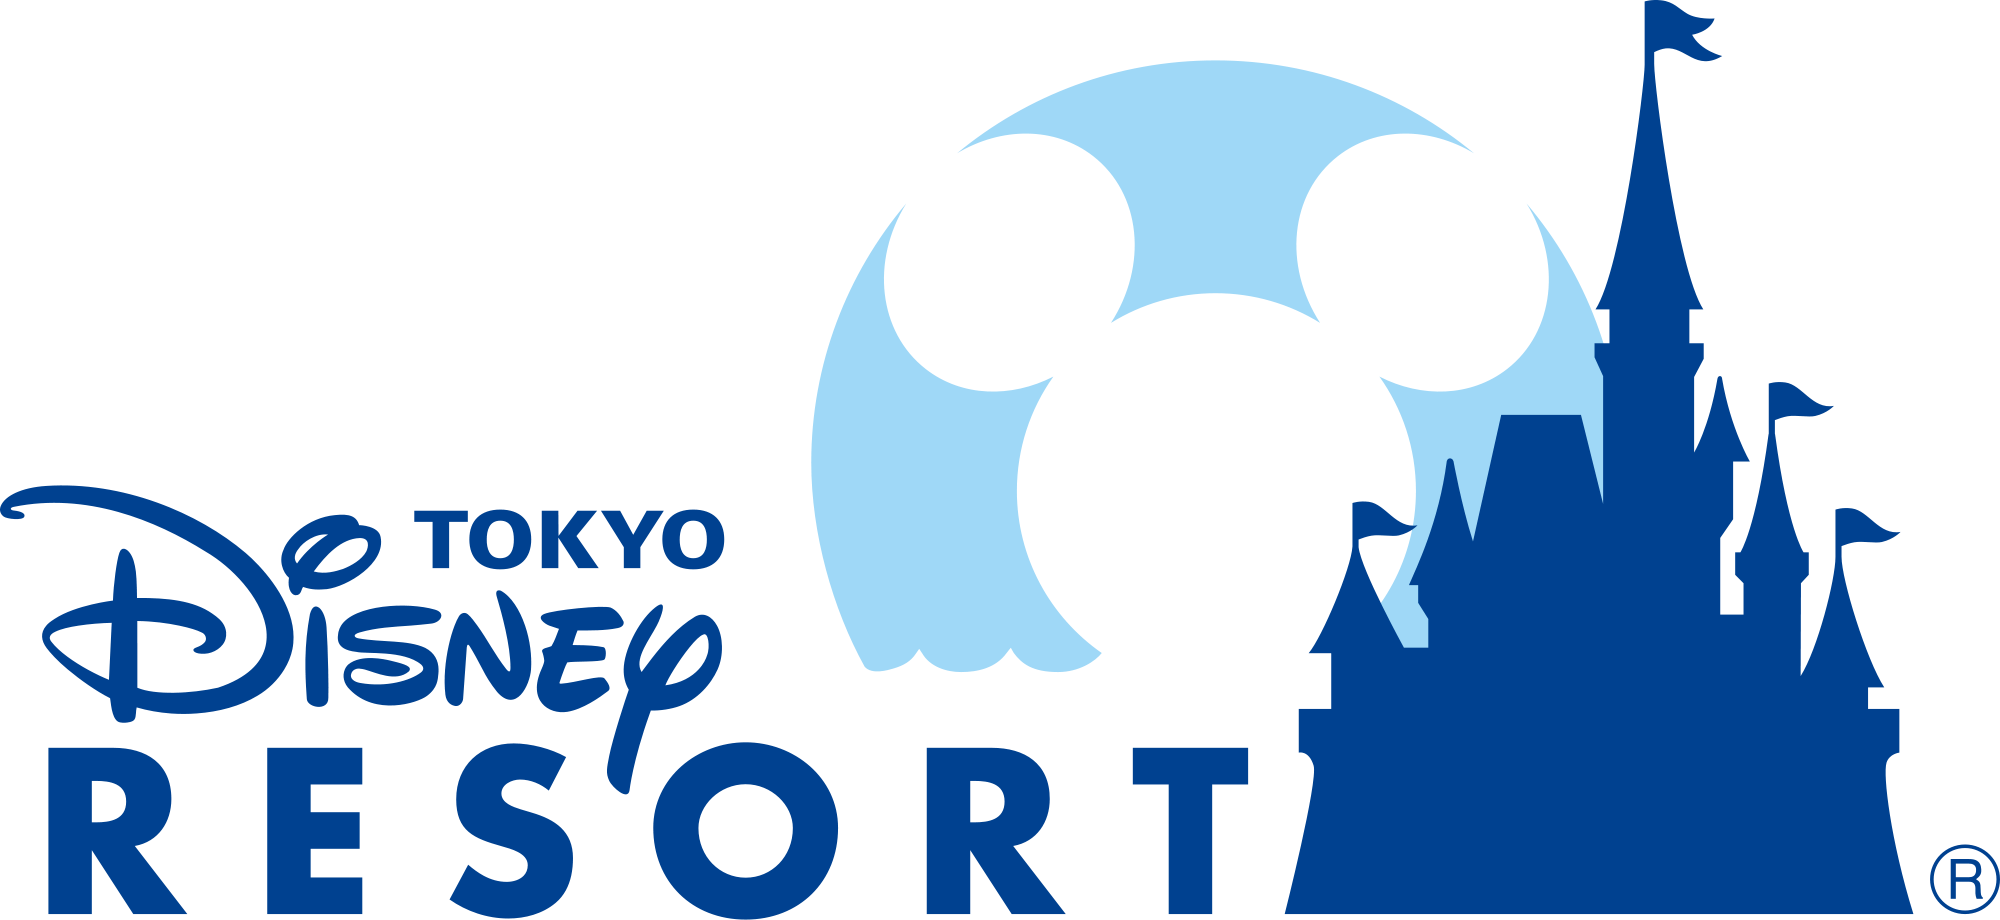 Tokyo Disneyland Logo - Tokyo Disney Resort | Disney Wiki | FANDOM powered by Wikia